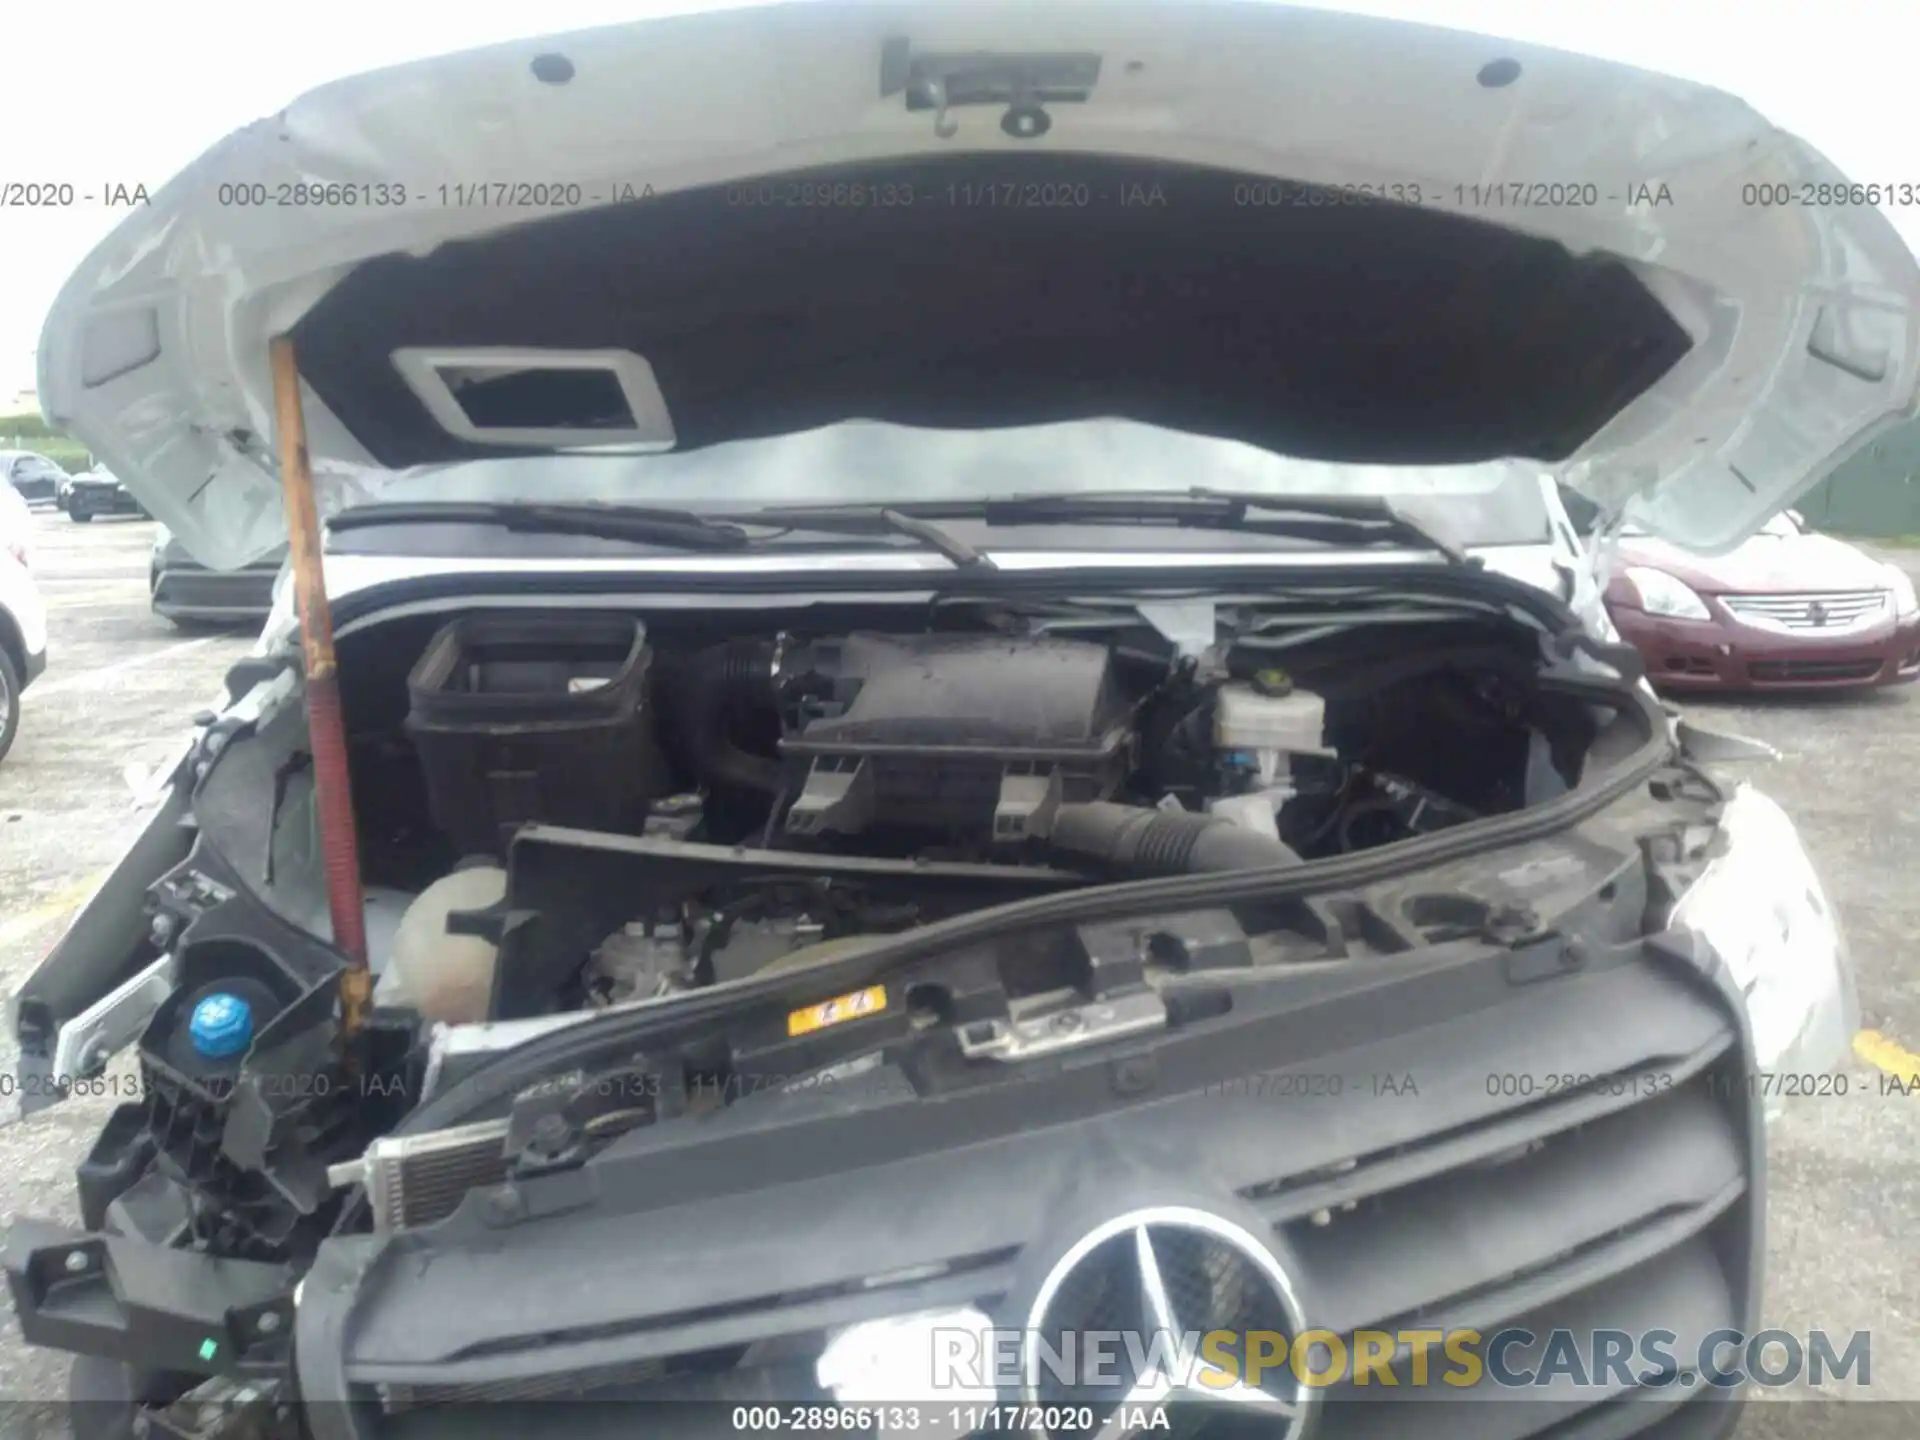 10 Photograph of a damaged car WDZPF1CD0KT000969 MERCEDES-BENZ SPRINTER PASSENGER VAN 2019